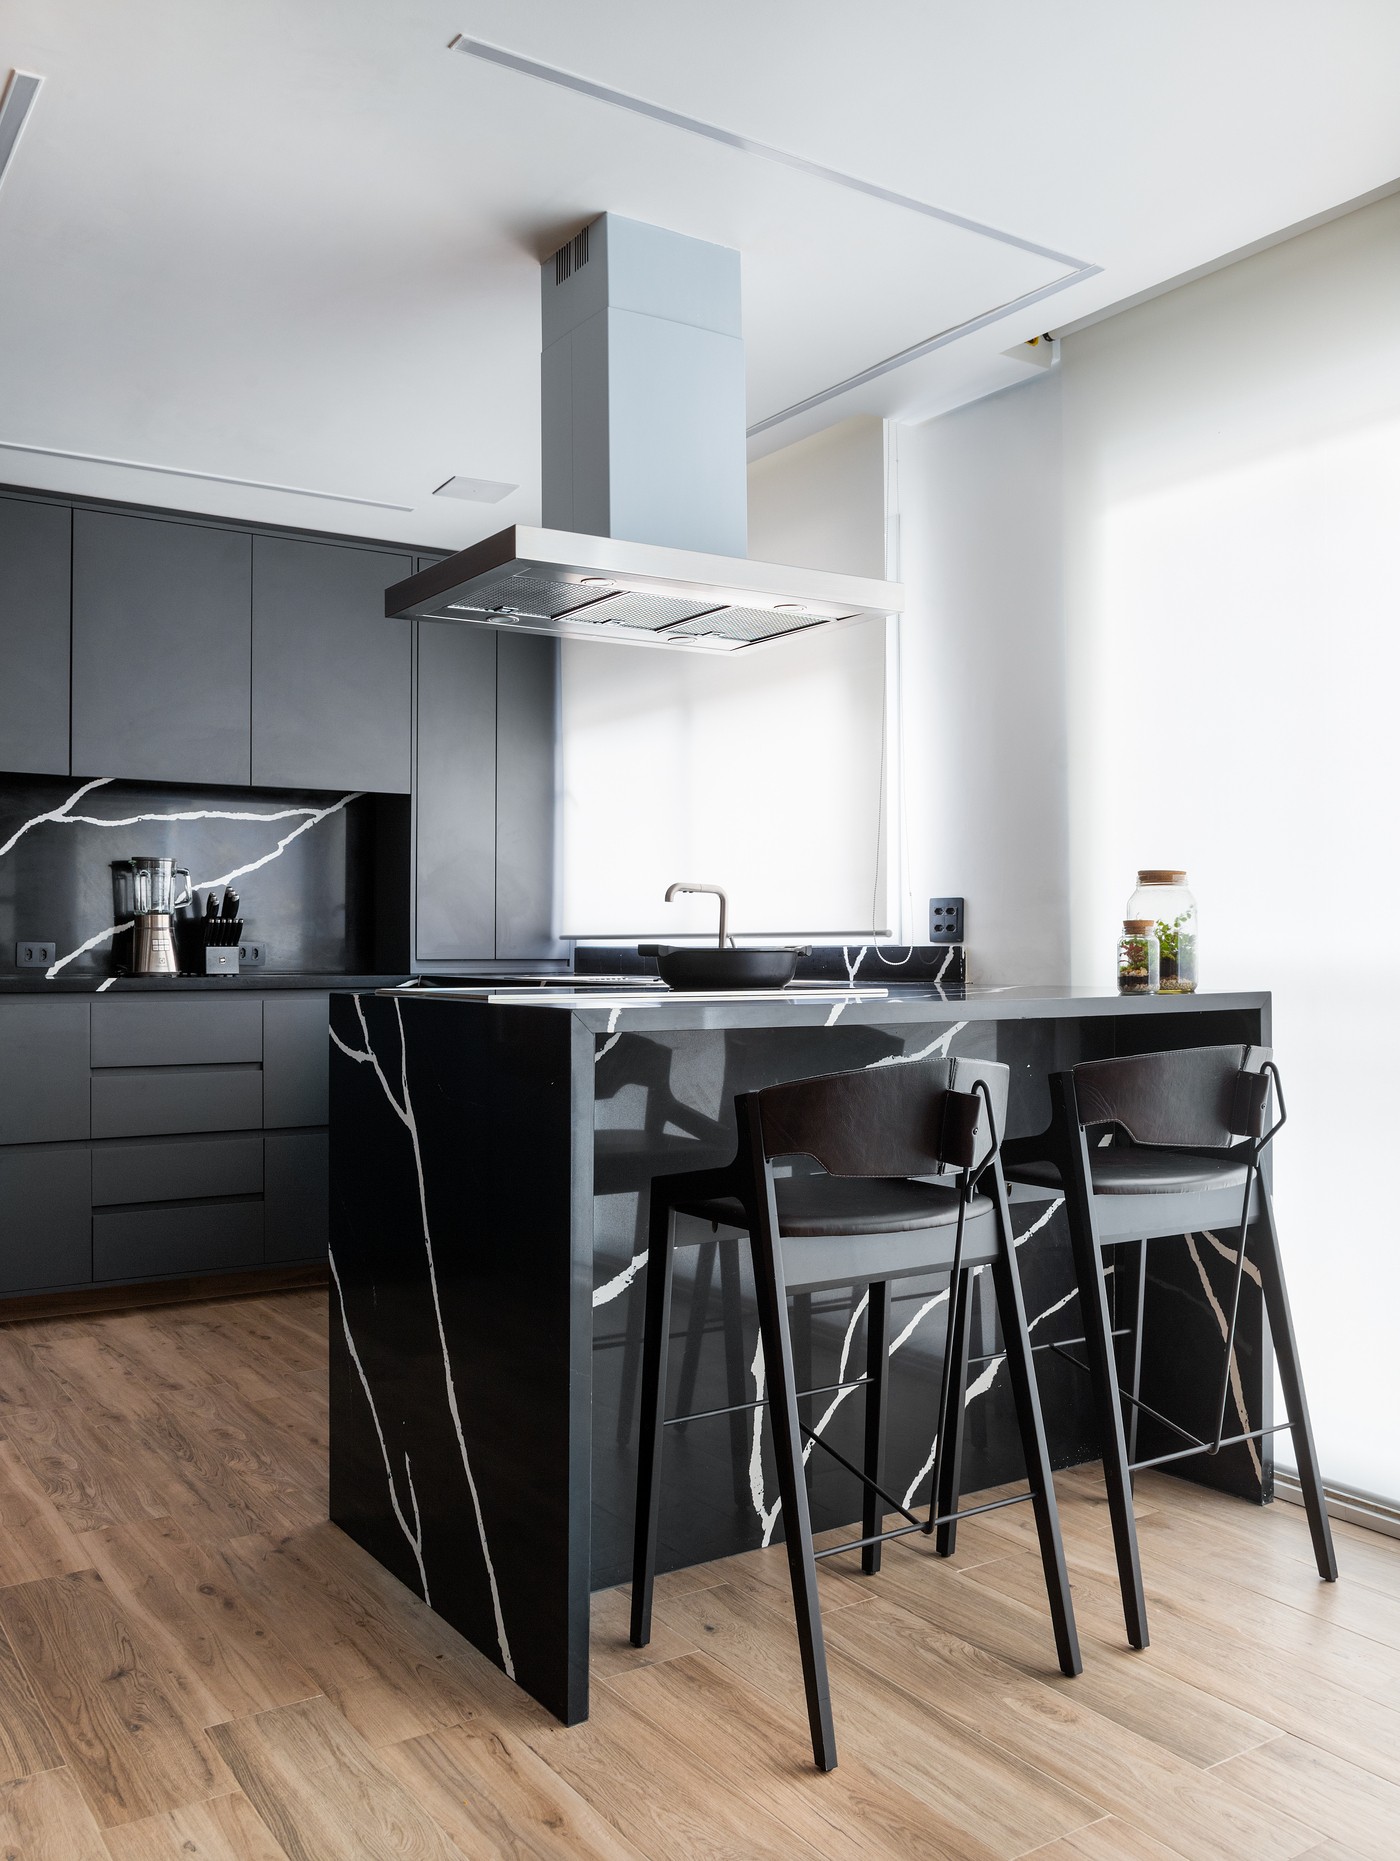 Décor do dia: cozinha aberta com marcenaria preta e bancada de apoio (Foto: Fernando Crescenti)